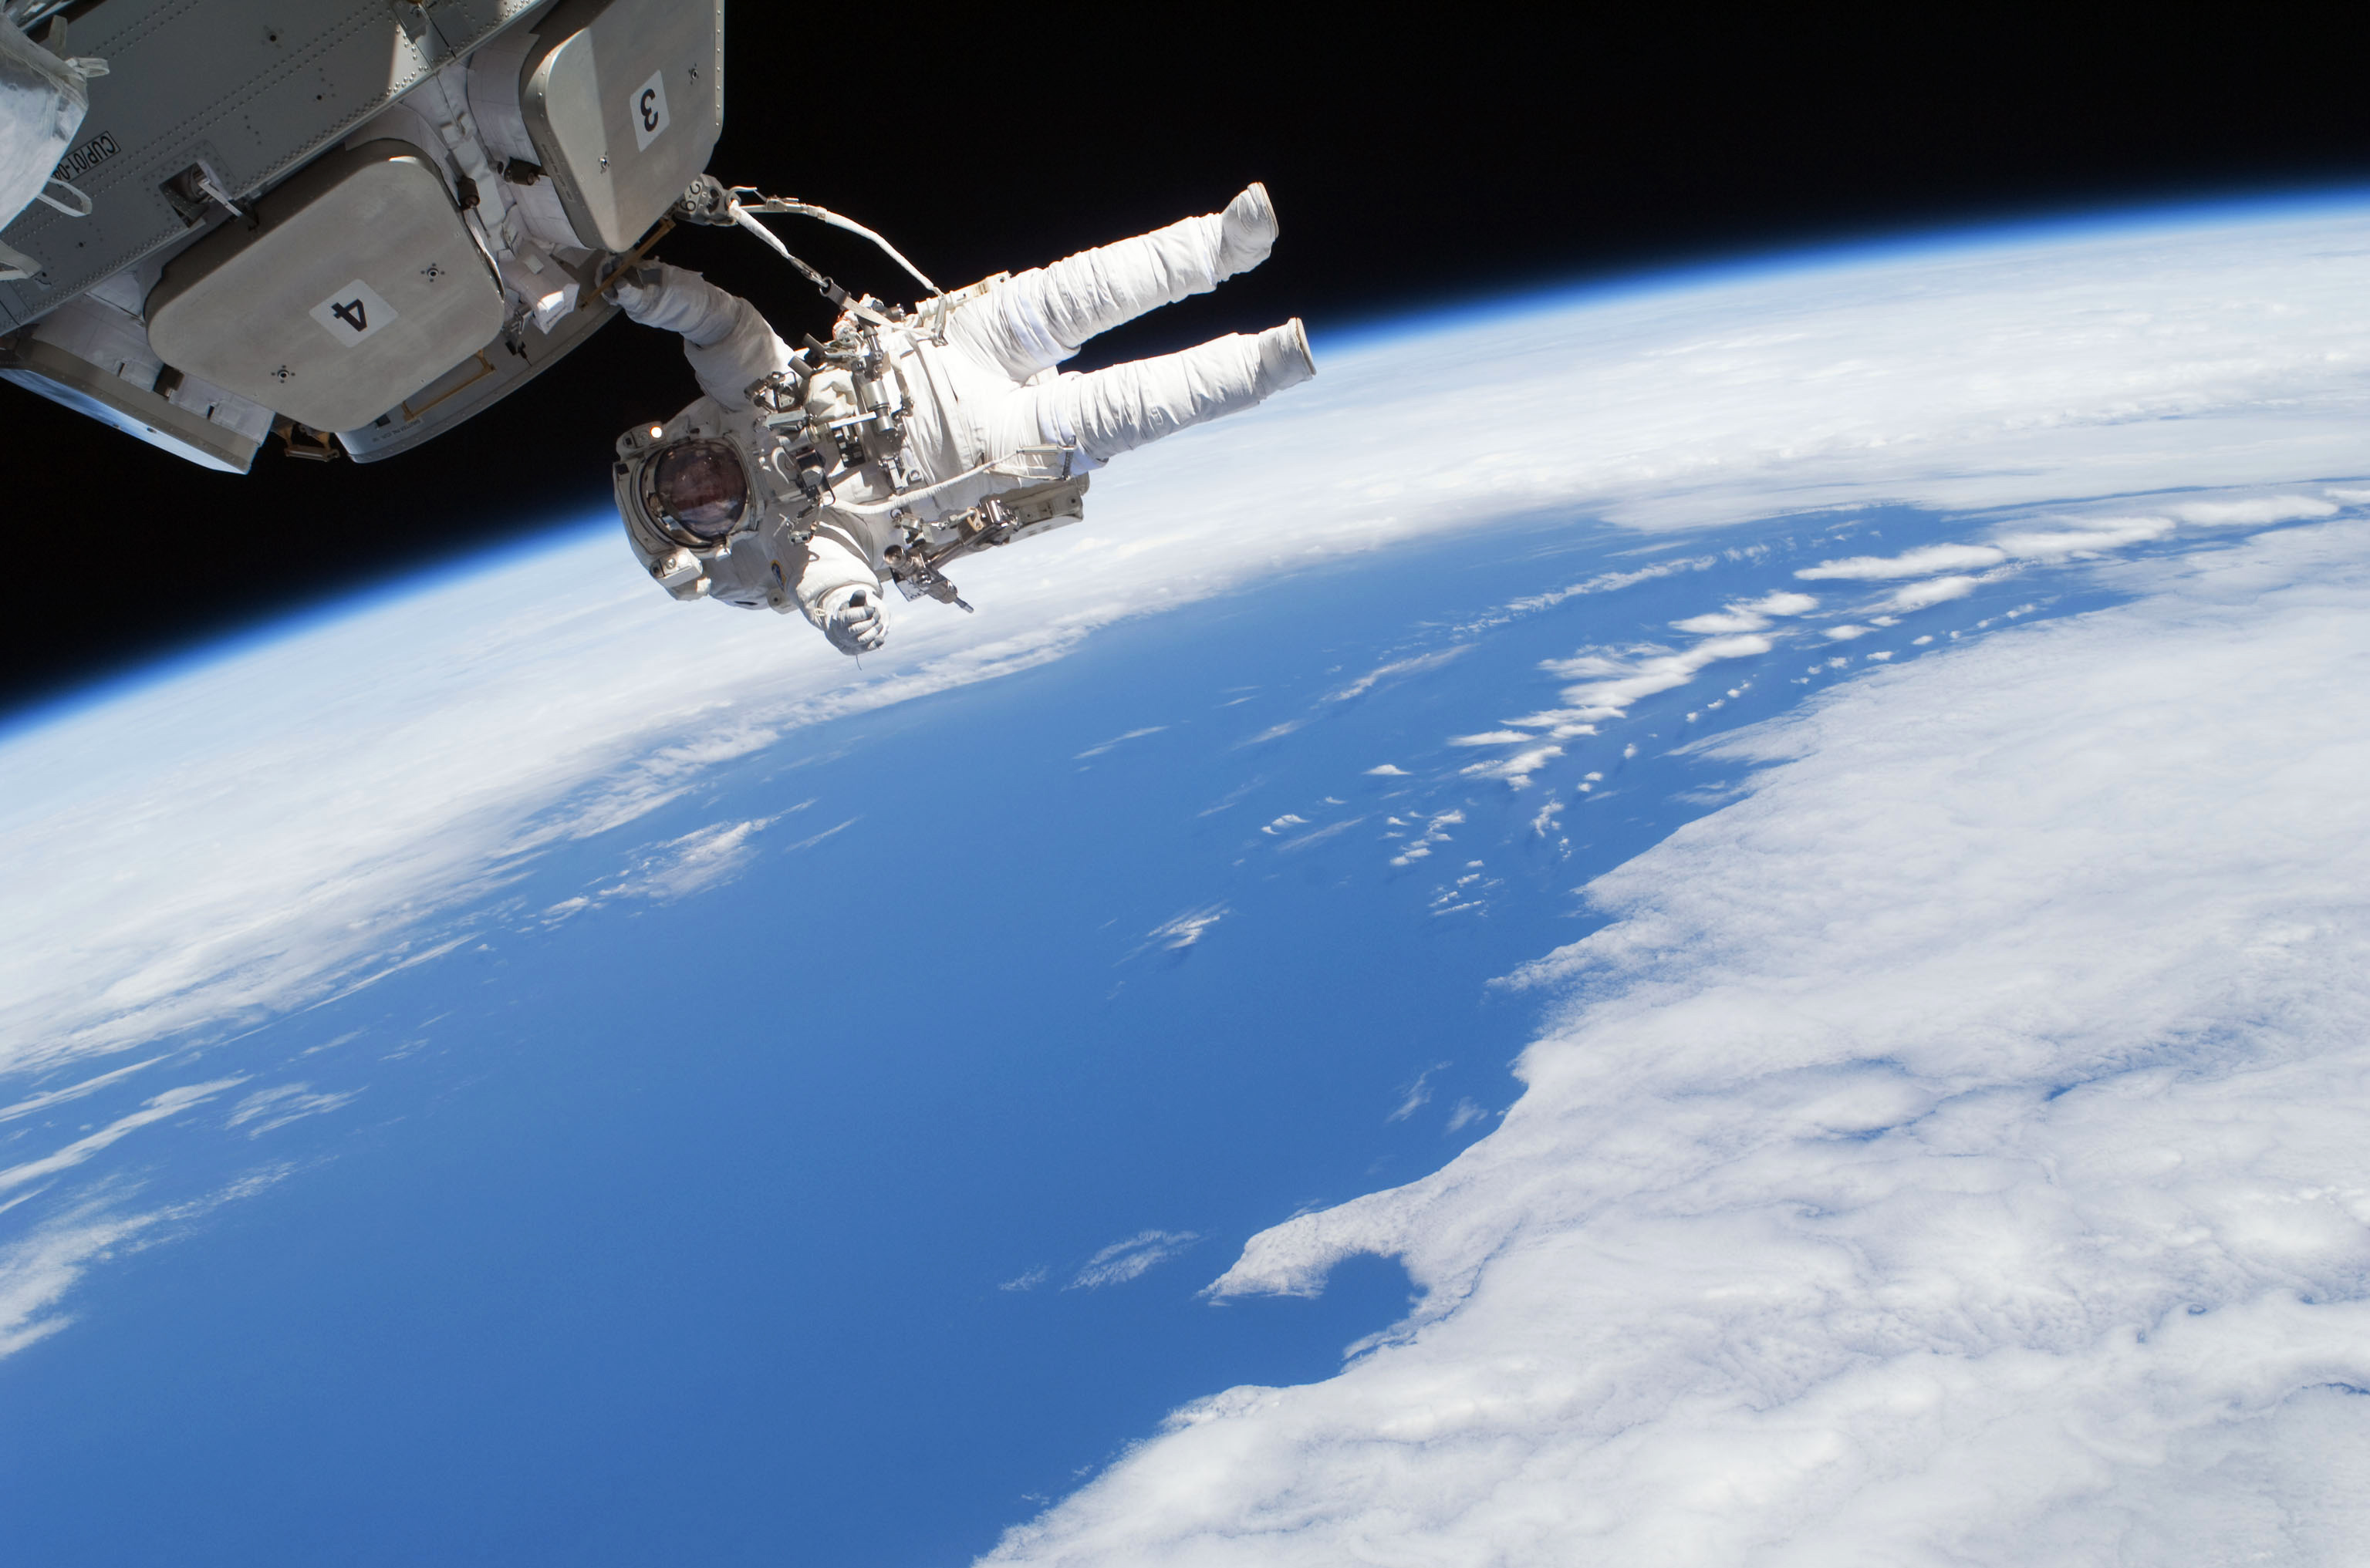 Фото космического корабля в космосе. Космический корабль на земле. Космонавтика. Космическая станция. Космос земля космический корабль.